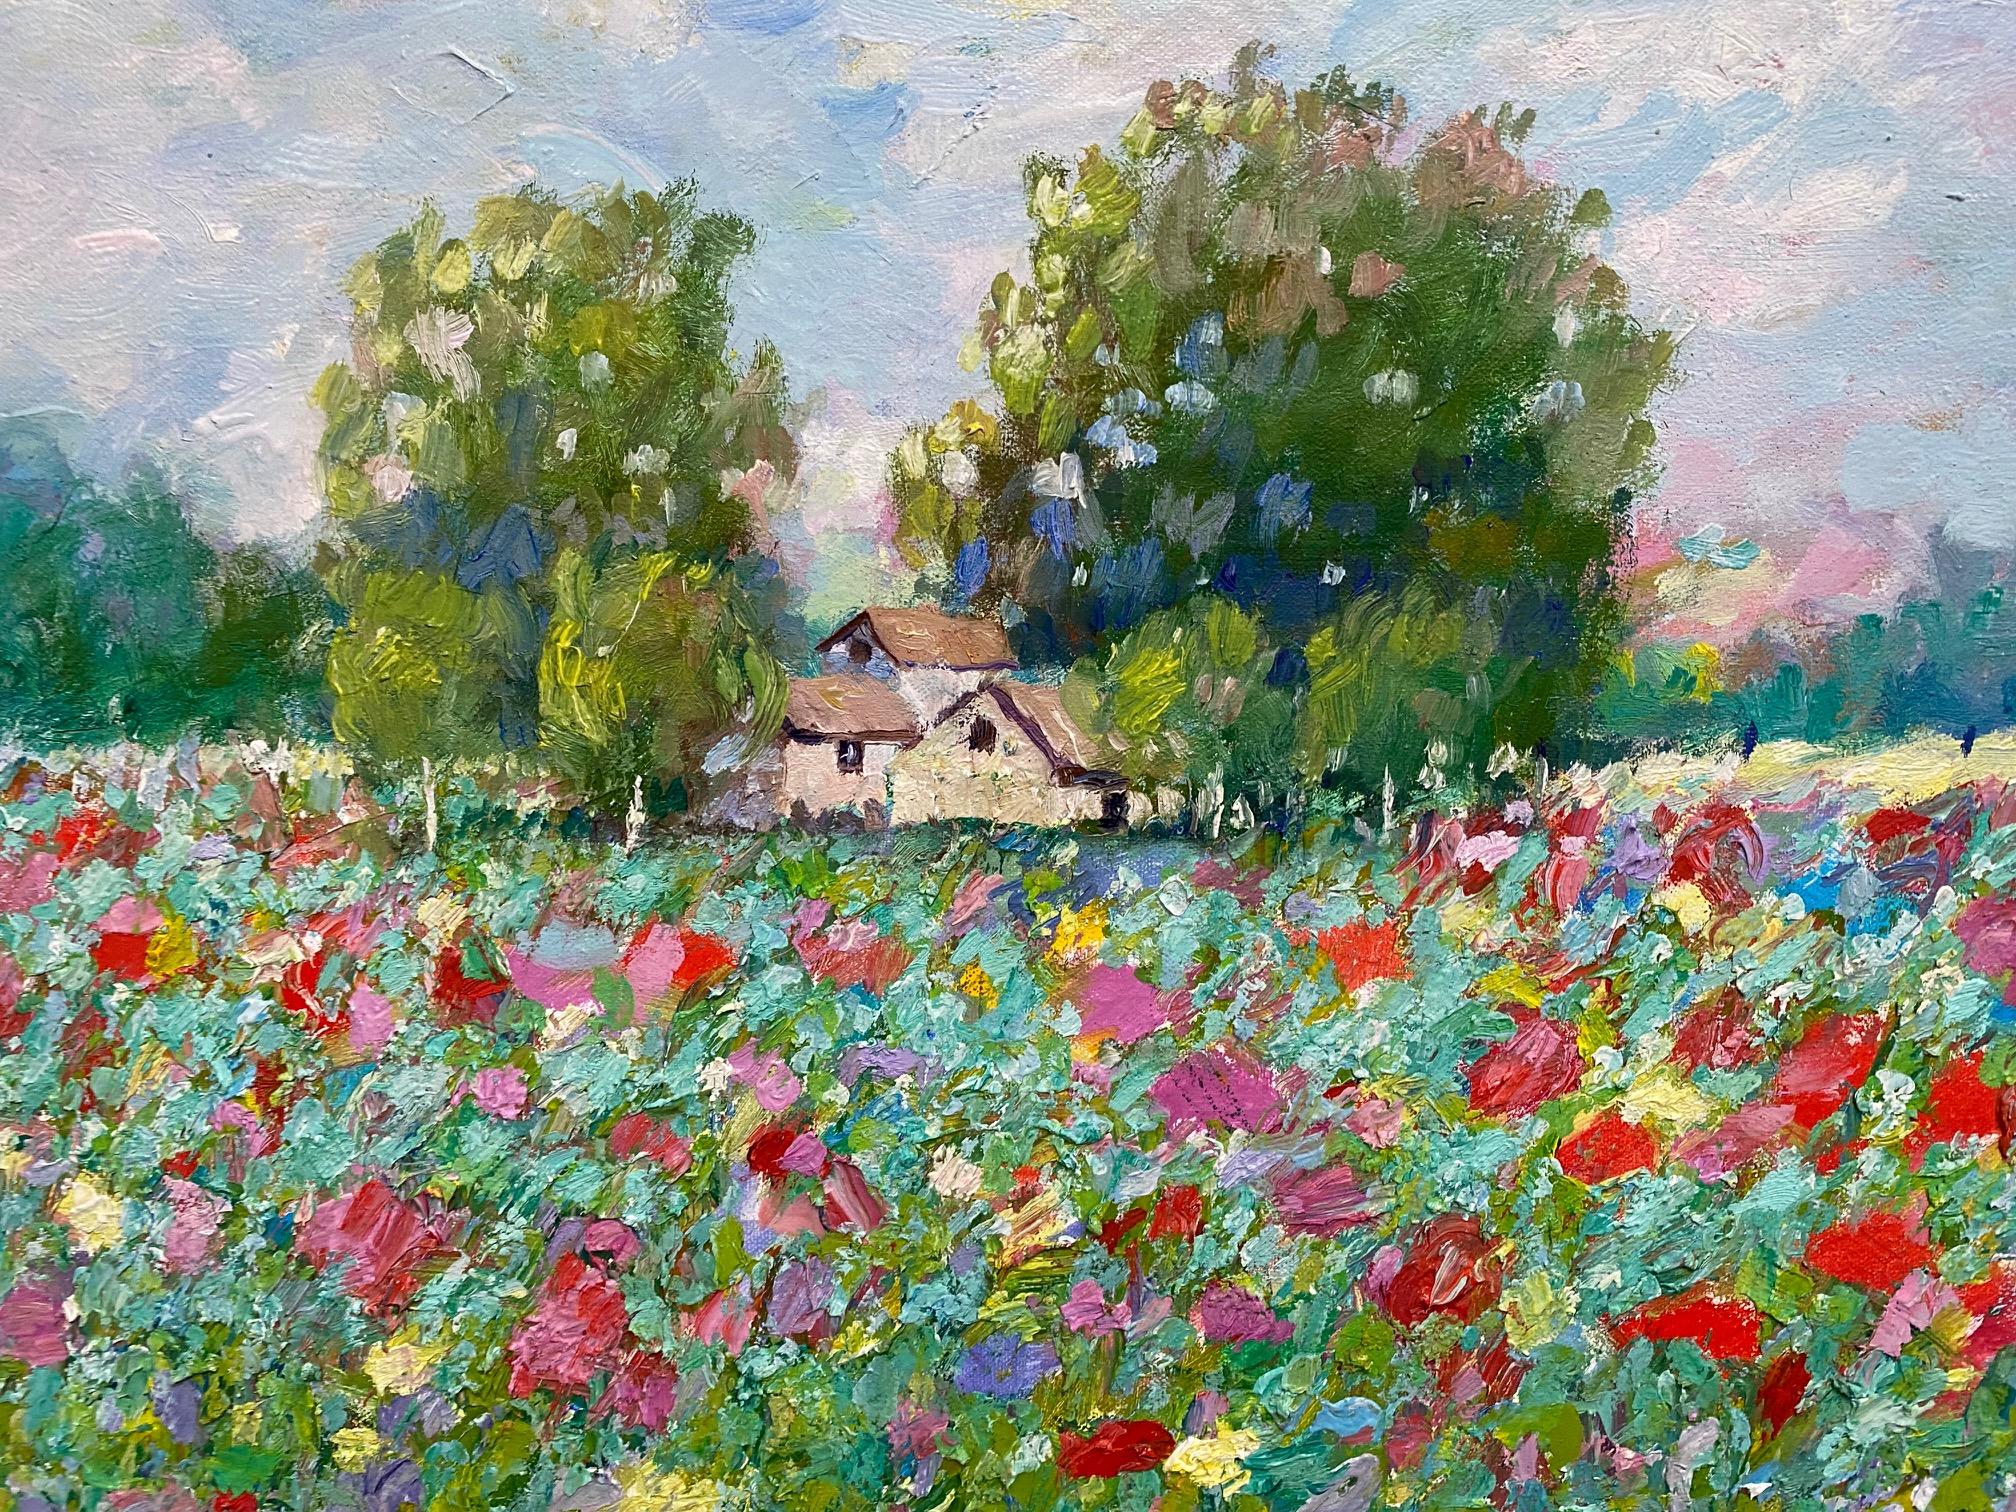 Homestead of Flowers, paysage impressionniste français contemporain original 30x40 - Contemporain Painting par Eugene Maziarz